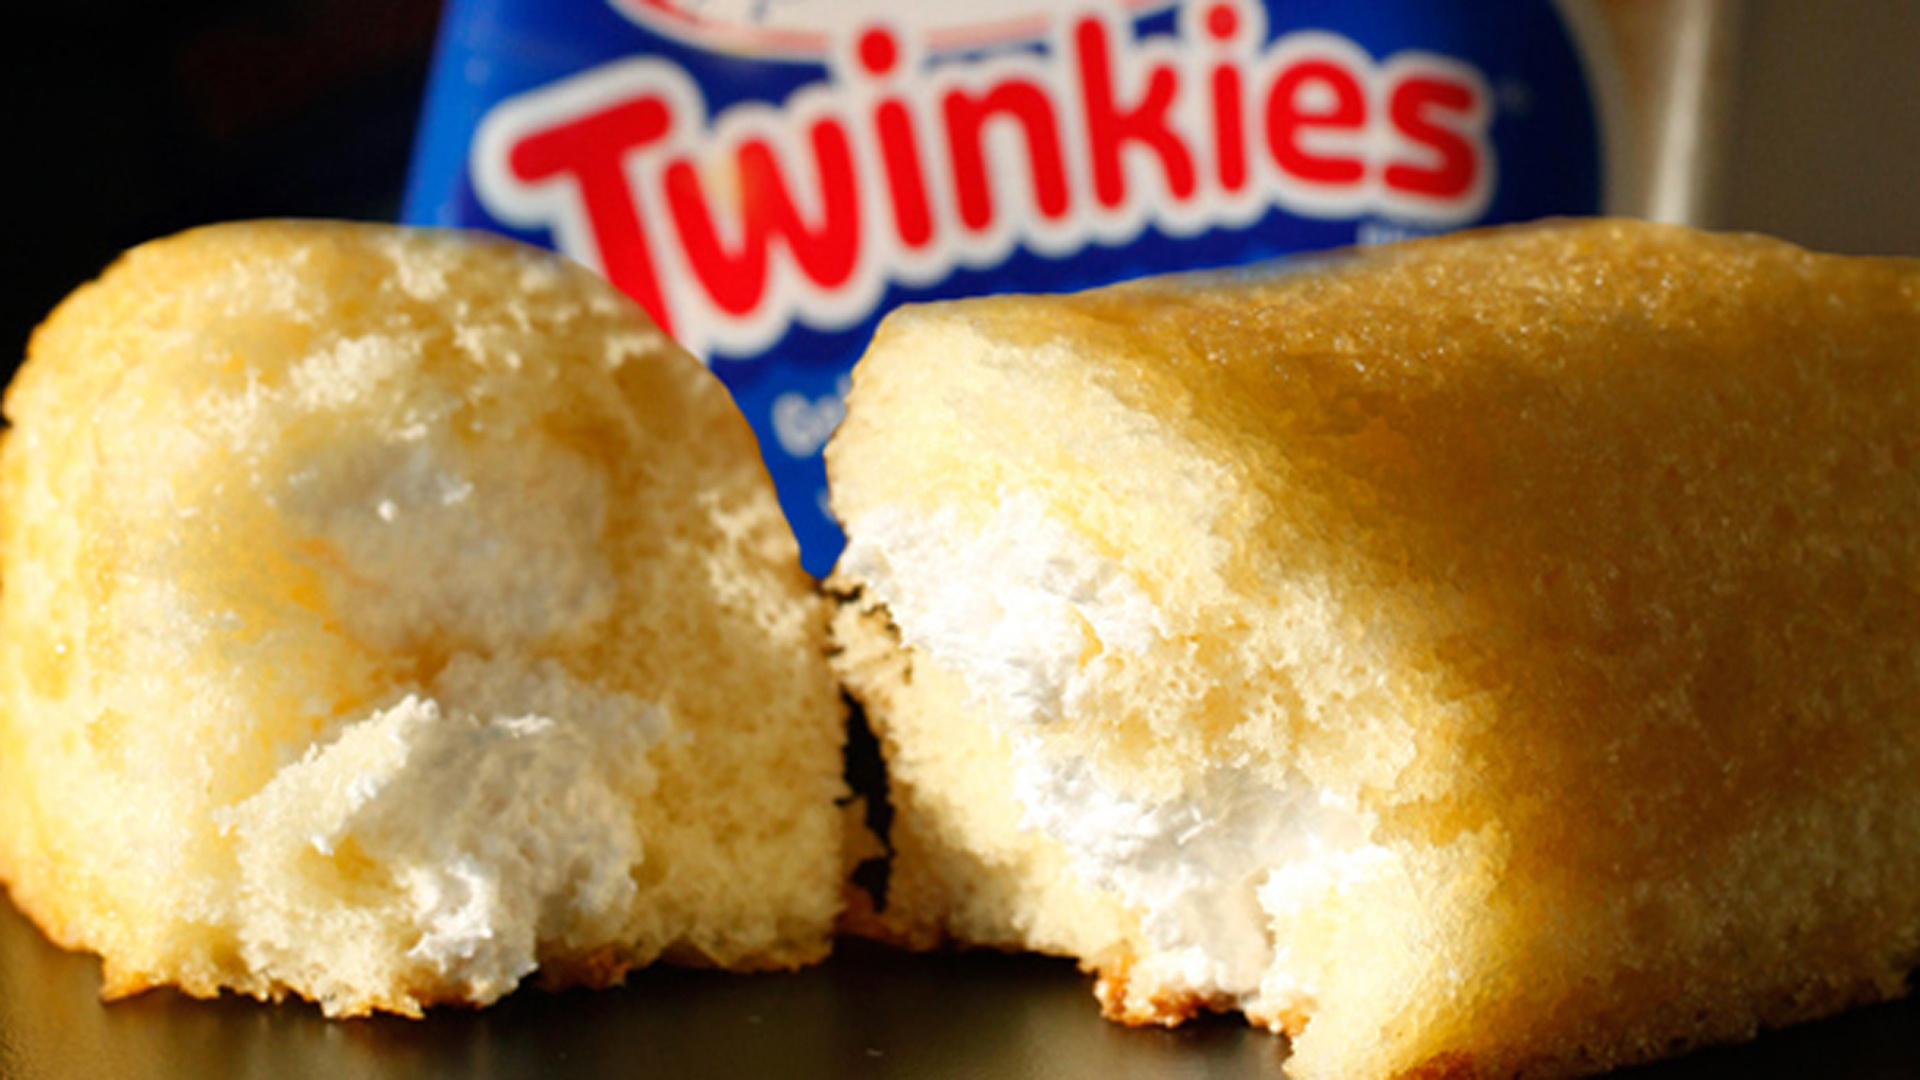 Twinkies, Celebrate Twinkie, Fun festivities, Unforgettable moments, 1920x1080 Full HD Desktop